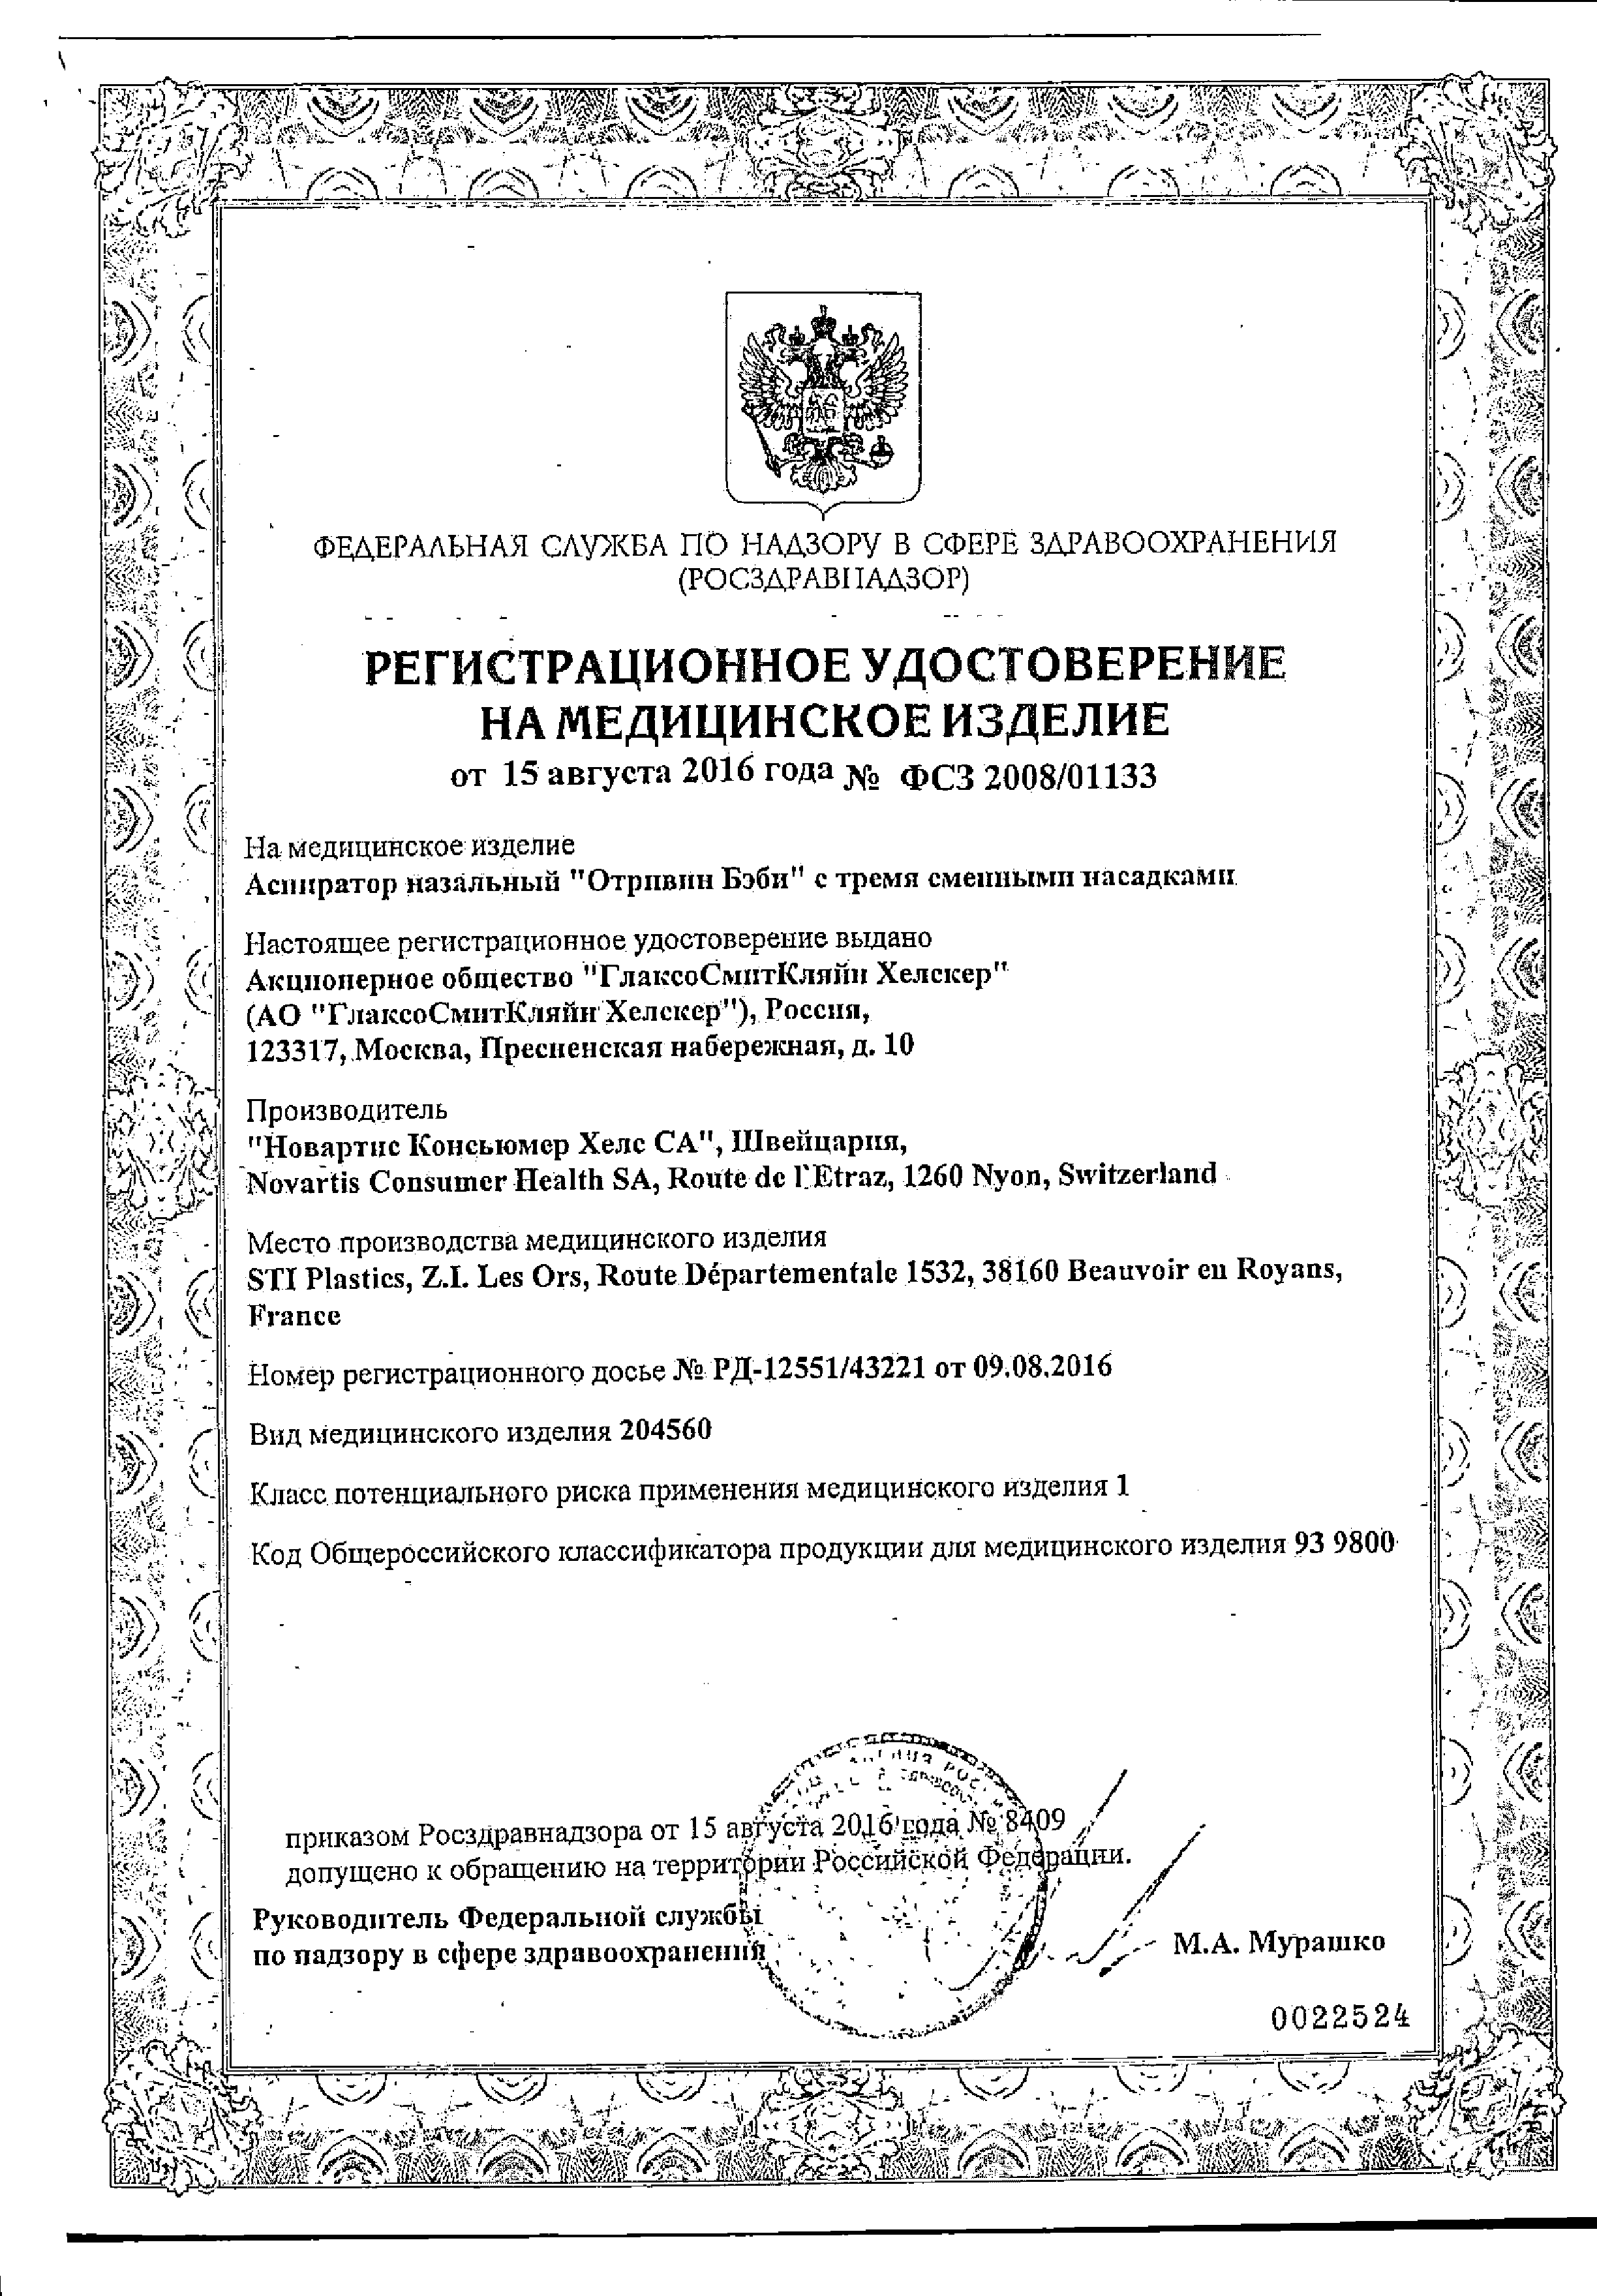 Отривин Бэби Аспиратор назальный сертификат